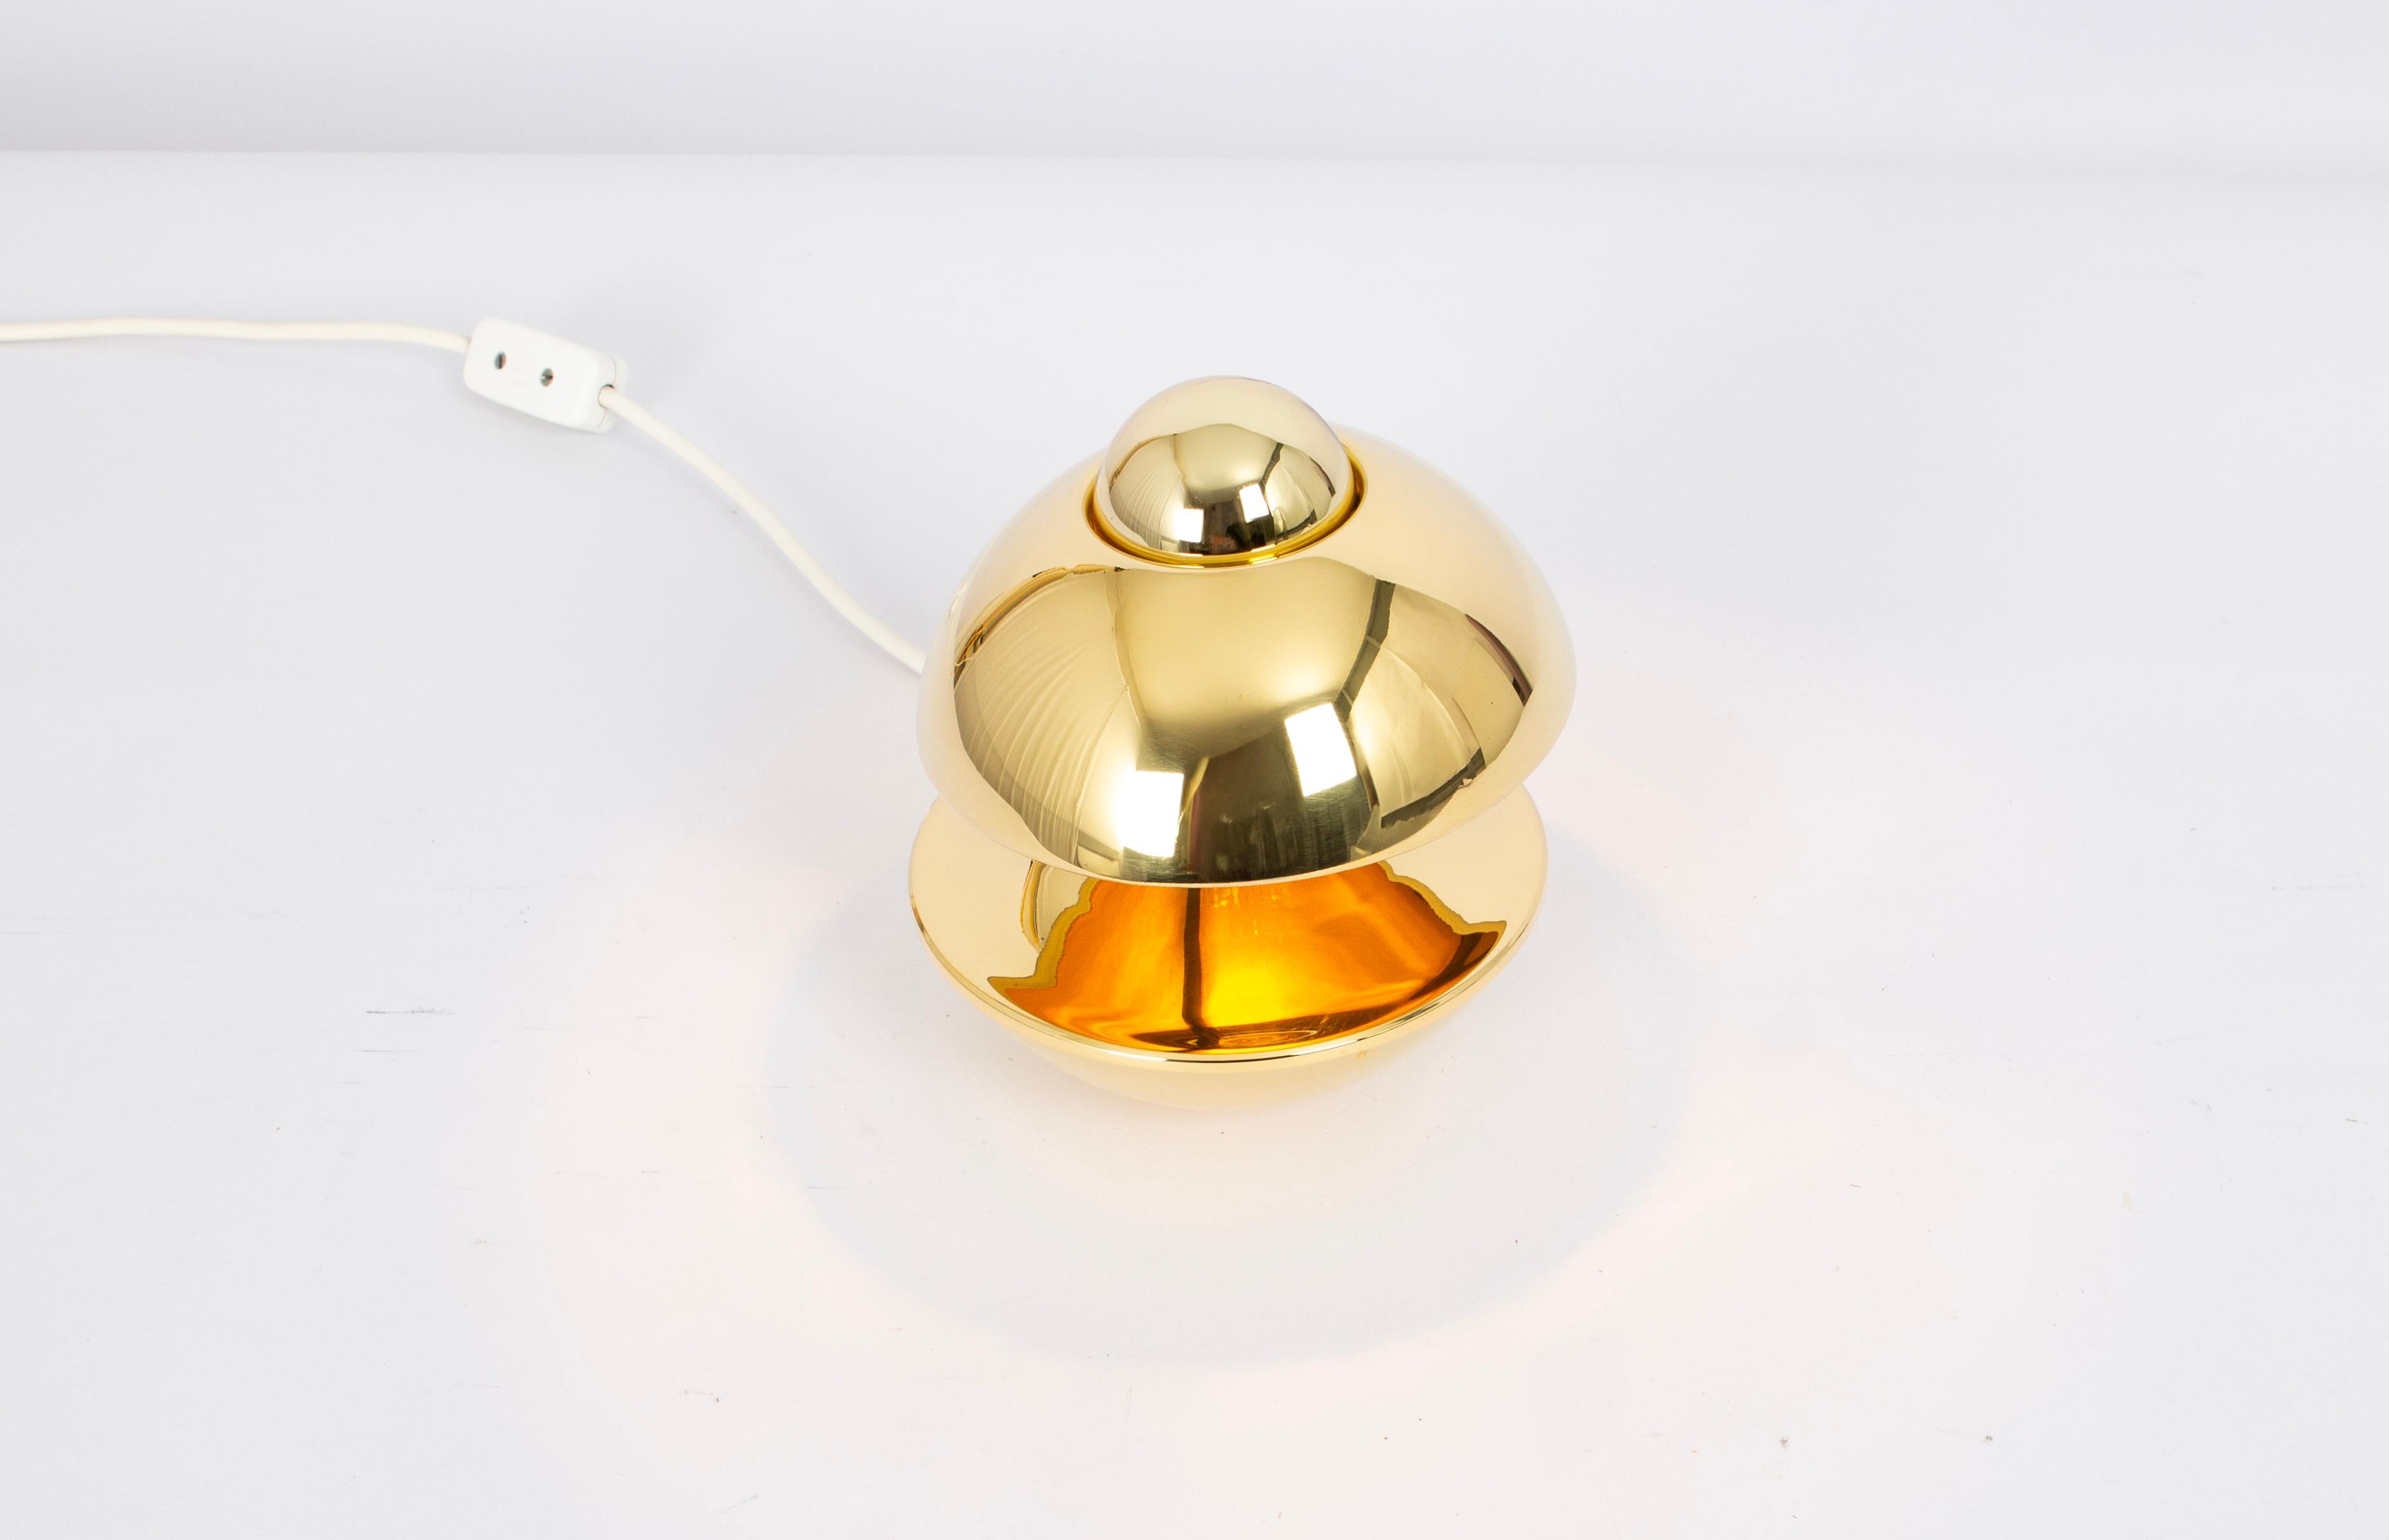 Petite Brass Tischlampe von Kaiser, Deutschland, 1970er Jahre
Designer: Klaus Hempel
Wunderbare Form und atemberaubende Lichtwirkung.
Dieses Modell gewann den IF Product Design Award 1972
Fassungen: 1 x E14 kleine Glühbirnen. (max. 40 W pro